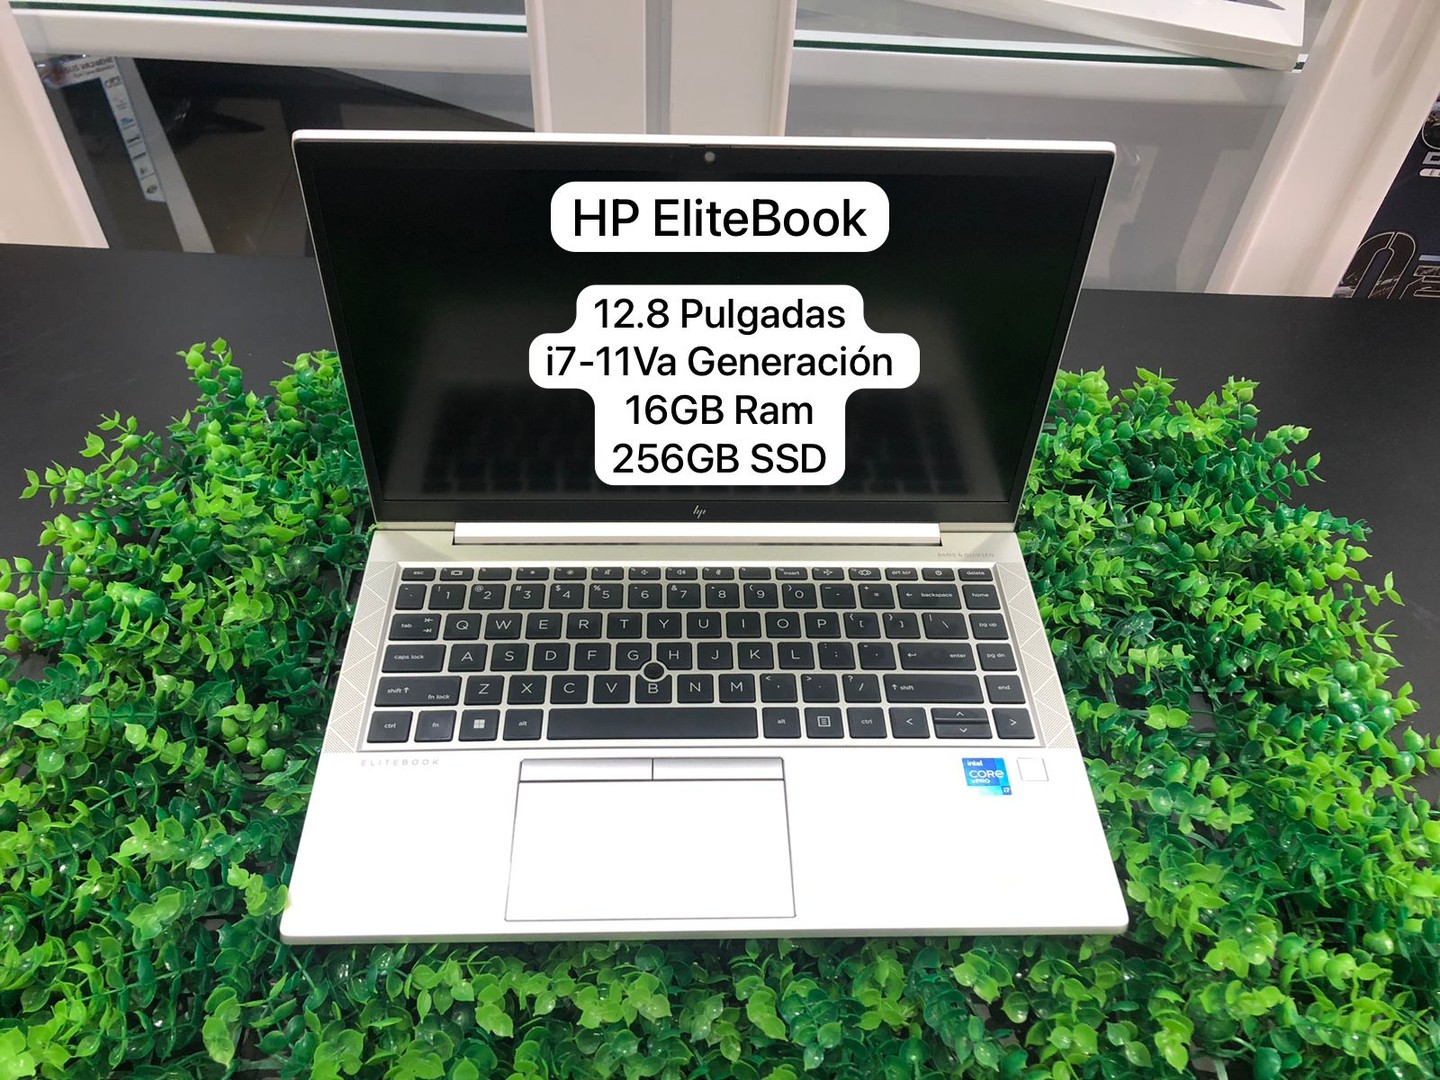 computadoras y laptops - Nueva HP EliteBook i7-11va Generacion 16GB Ram mas 256GB SSD de Almacenamiento 1